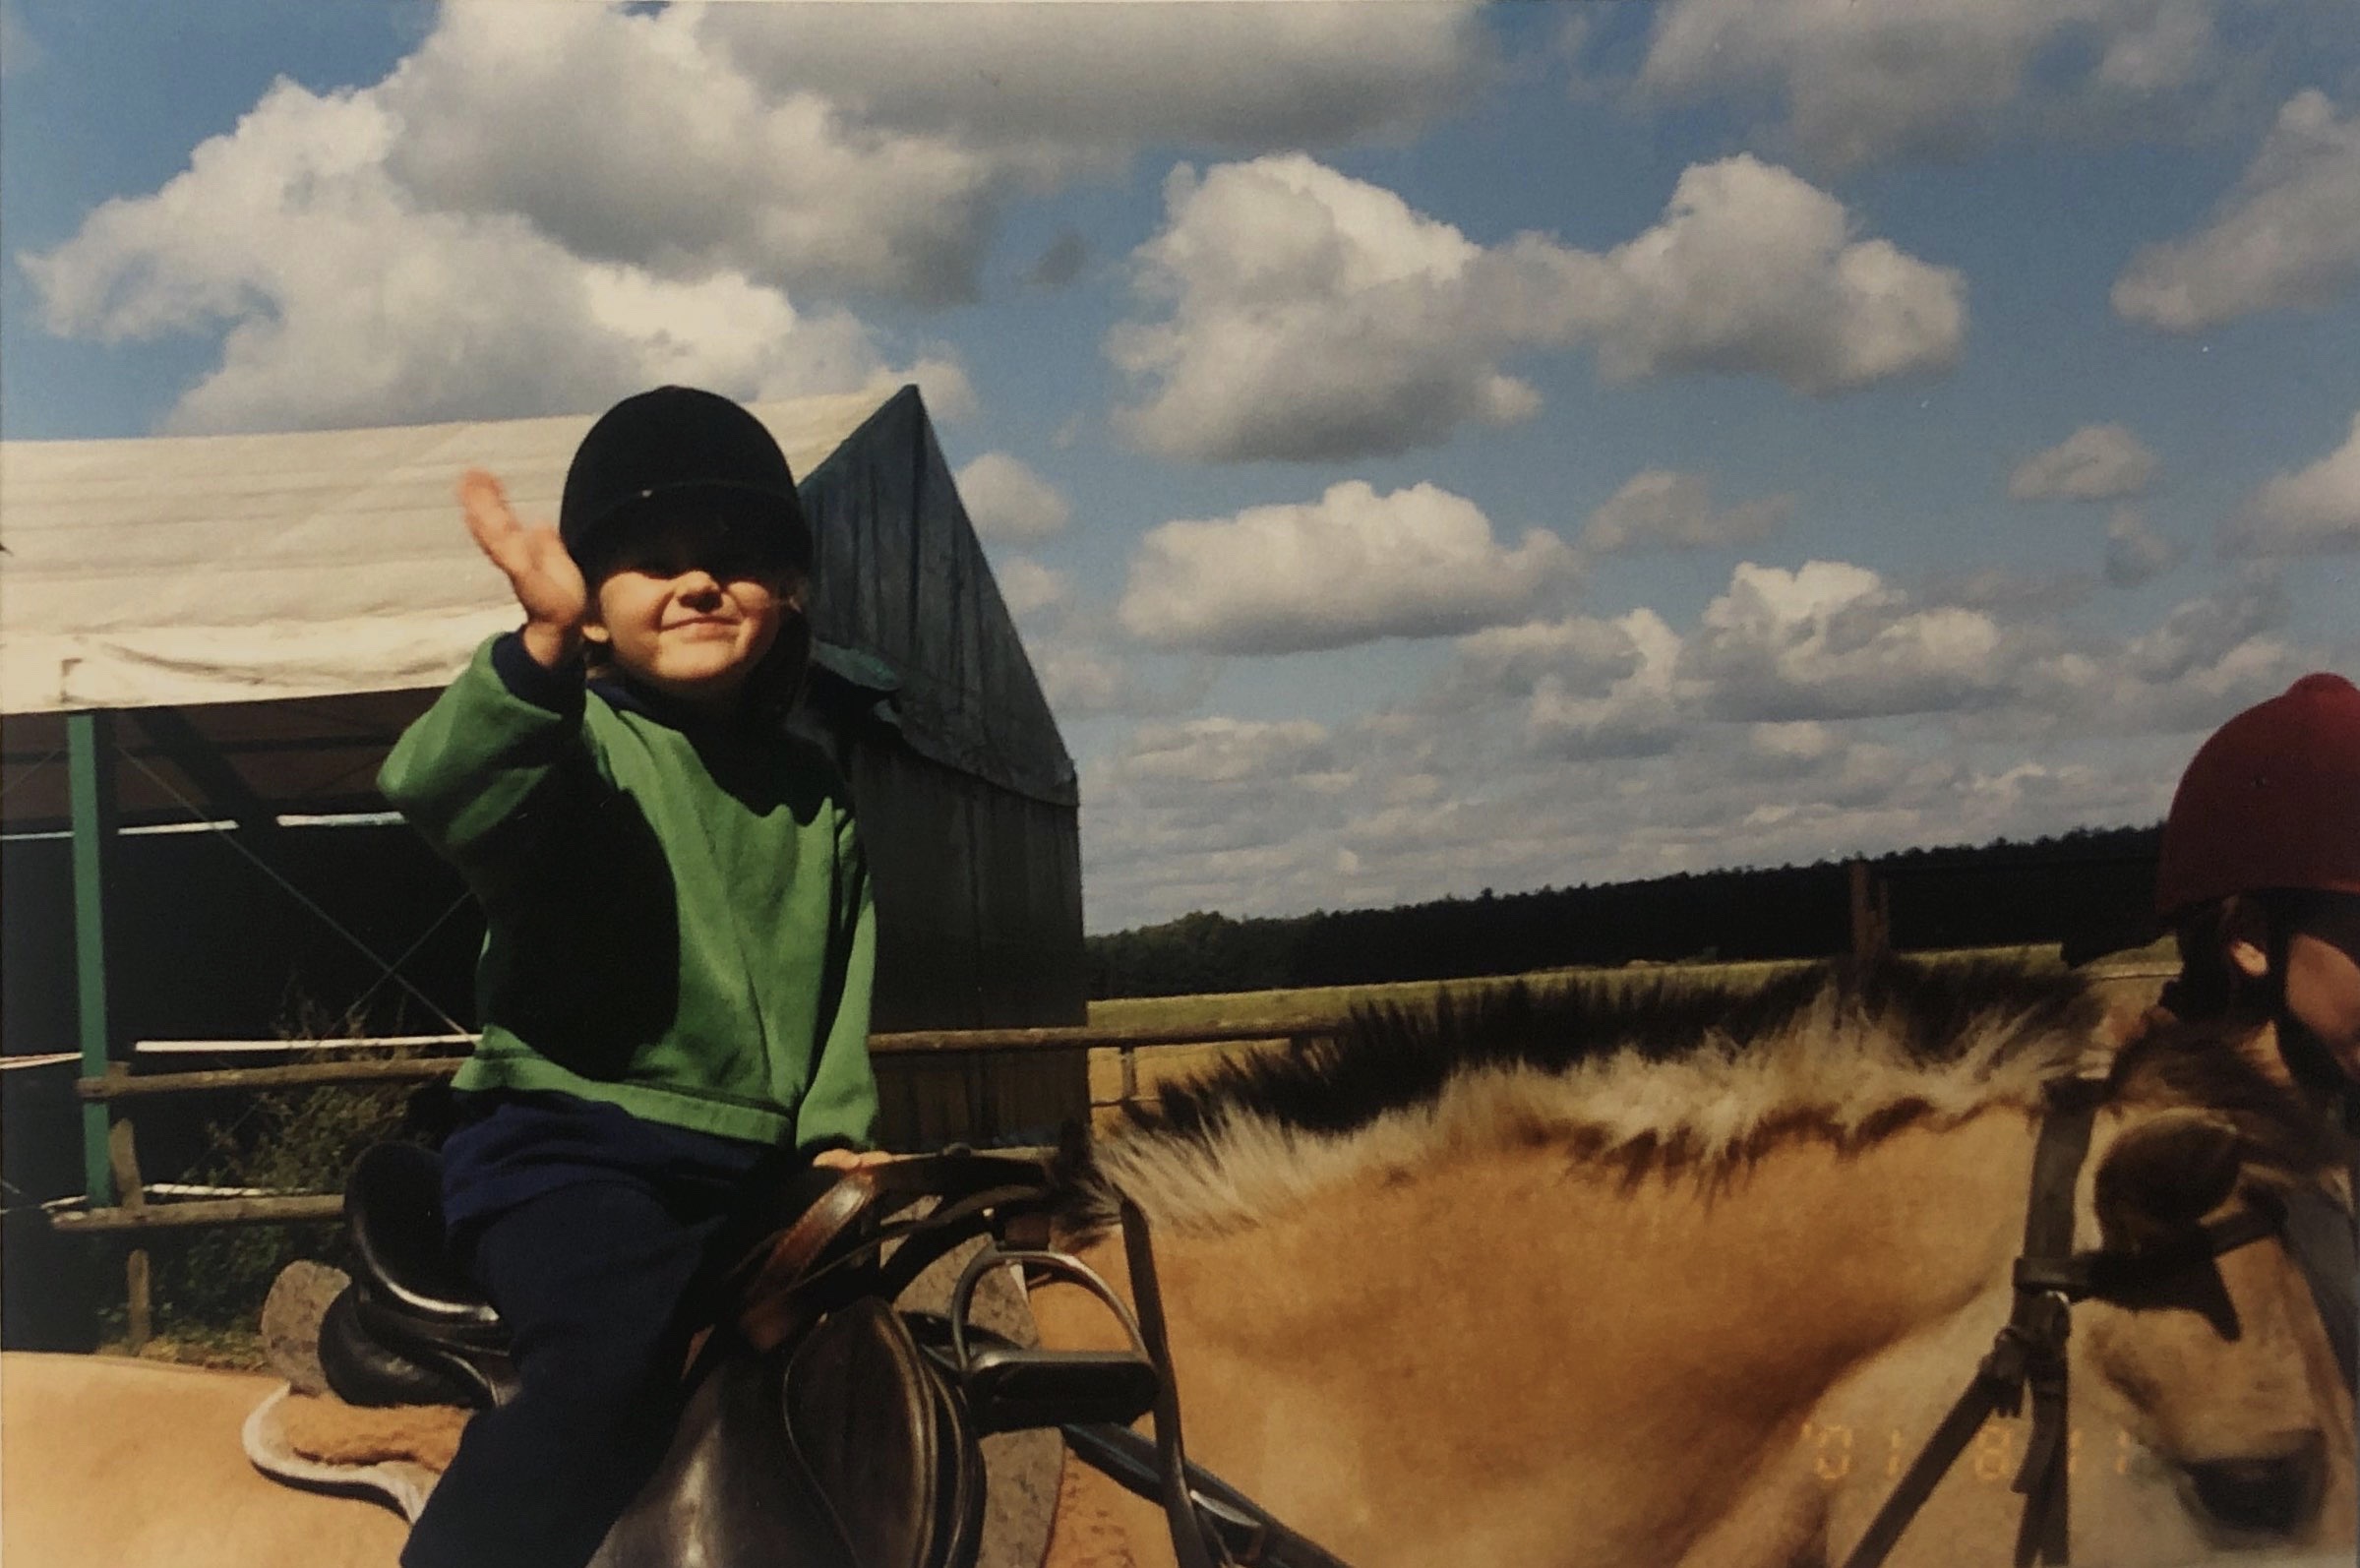 Iga around 5-years-old riding Borsuk a Przewalski Horse